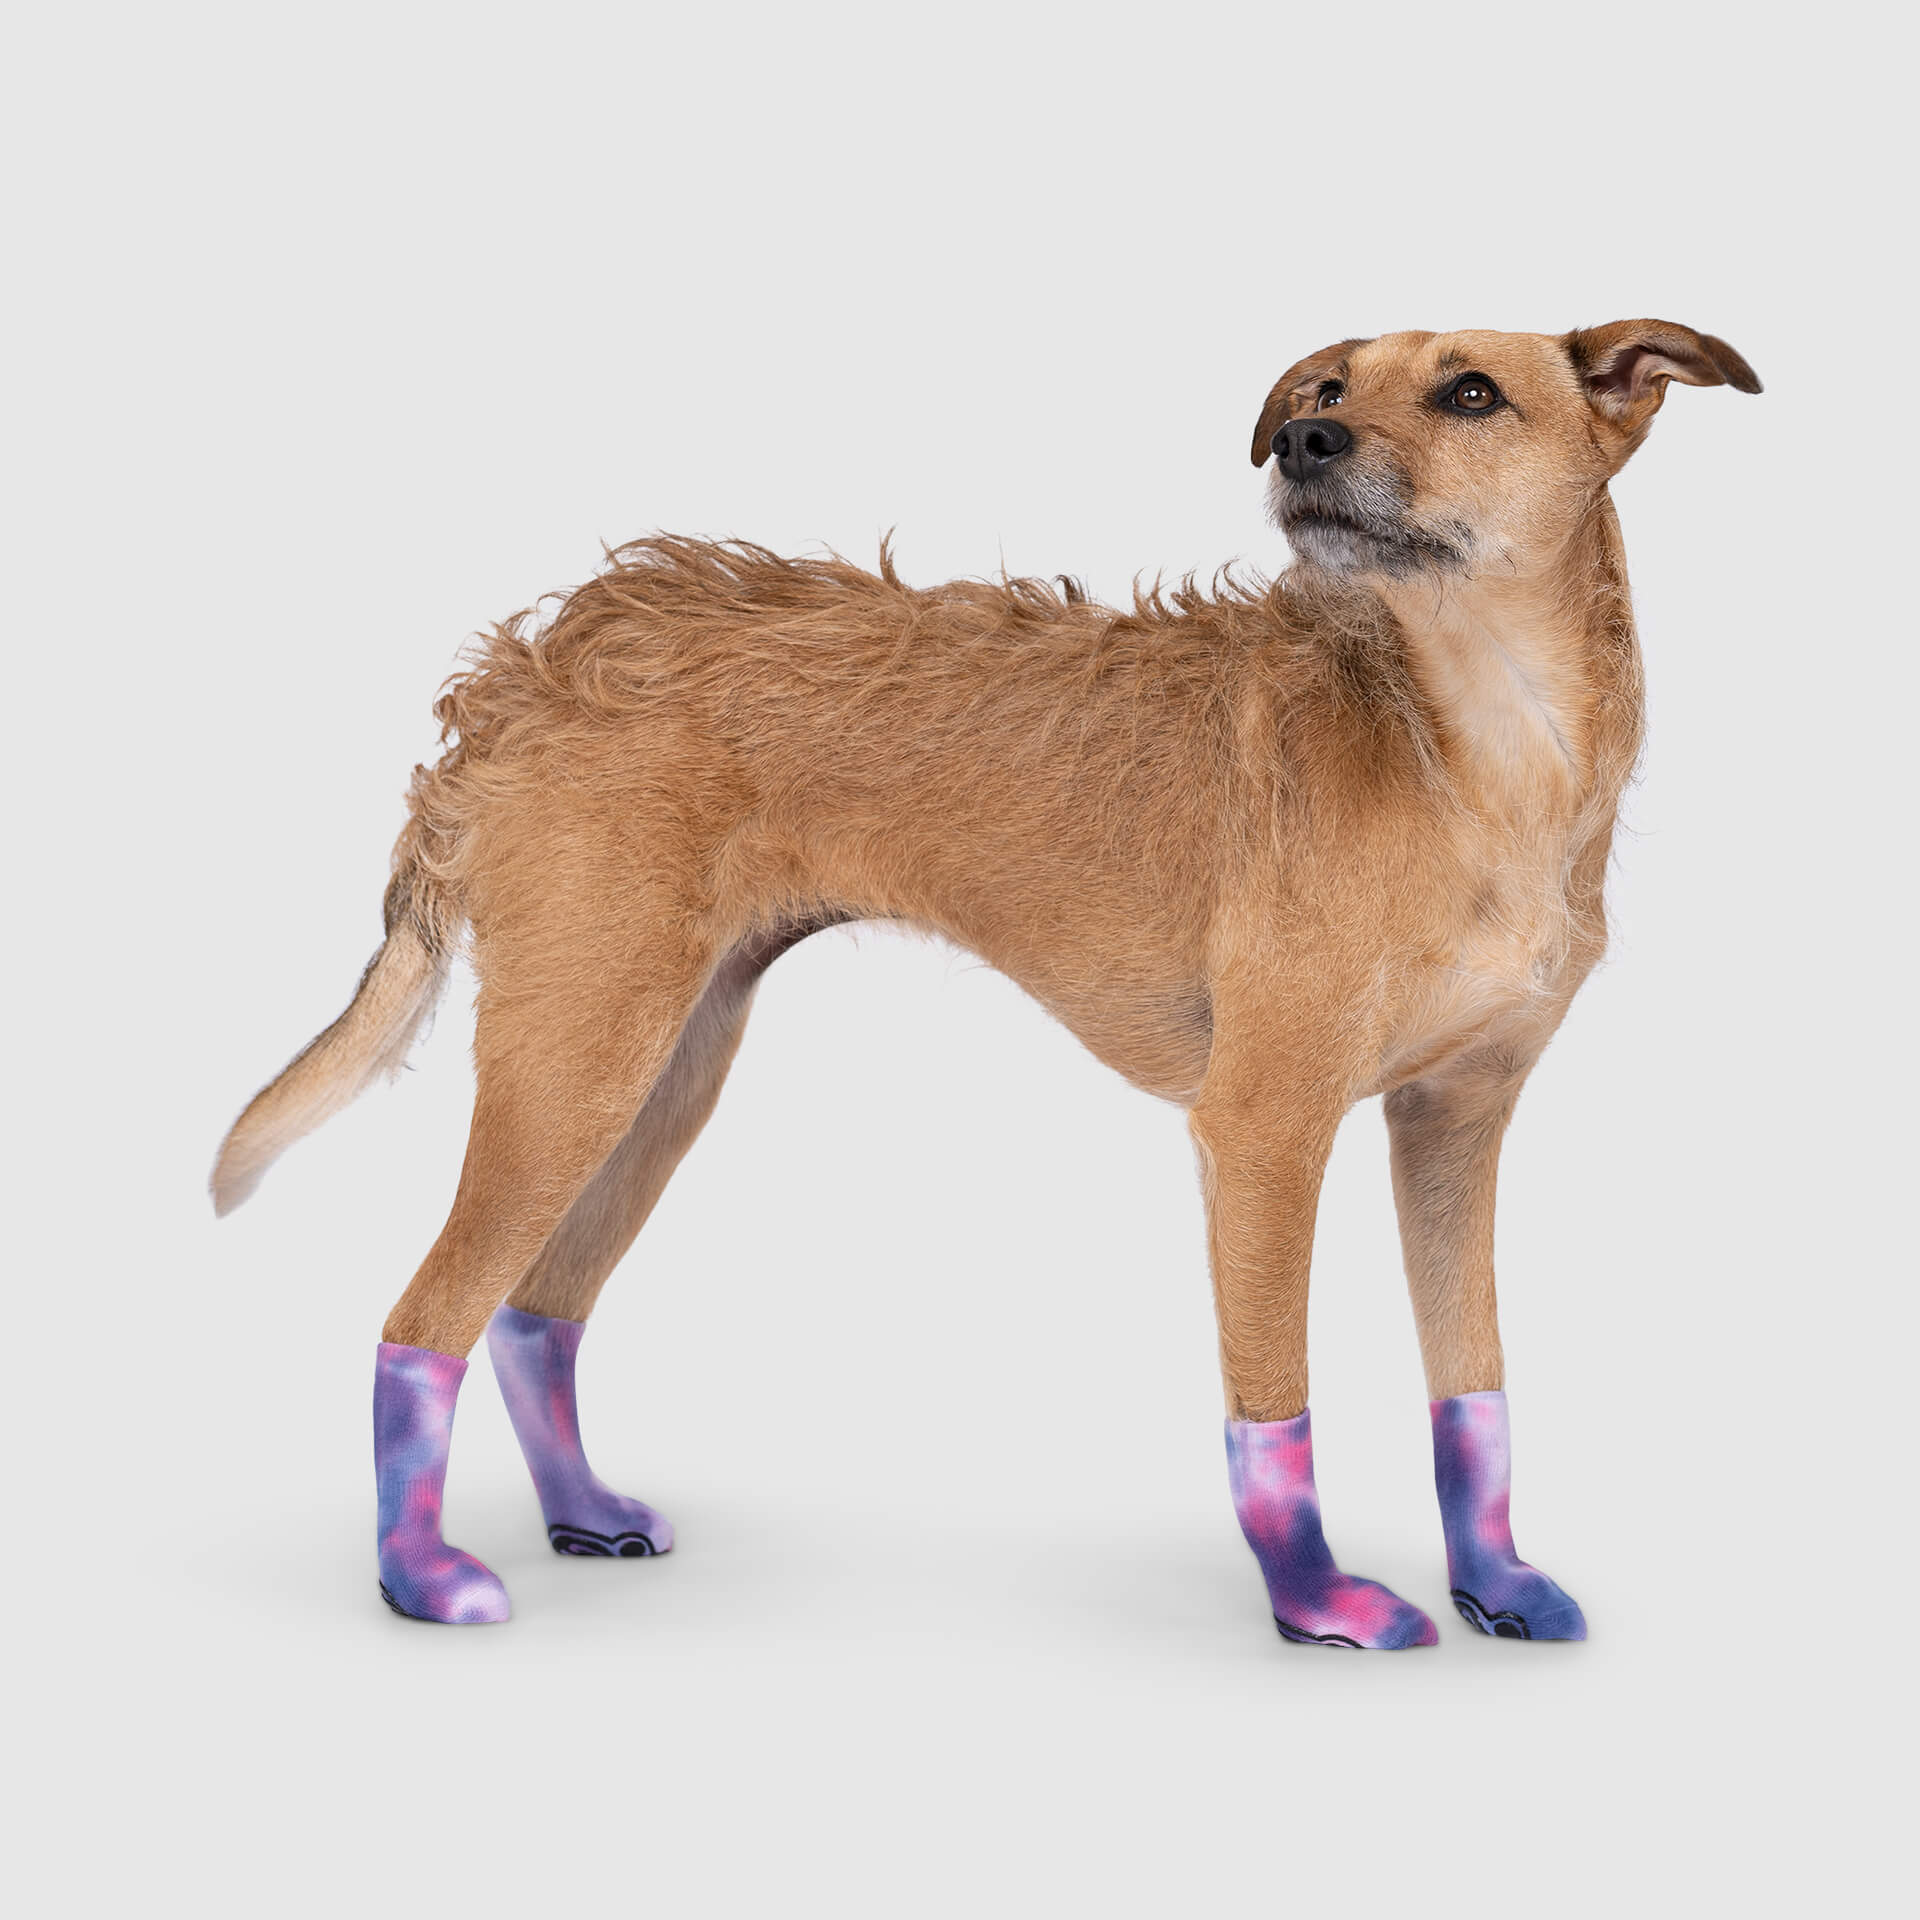 EXPAWLORER Non-Slip Tie-dye Dog Socks